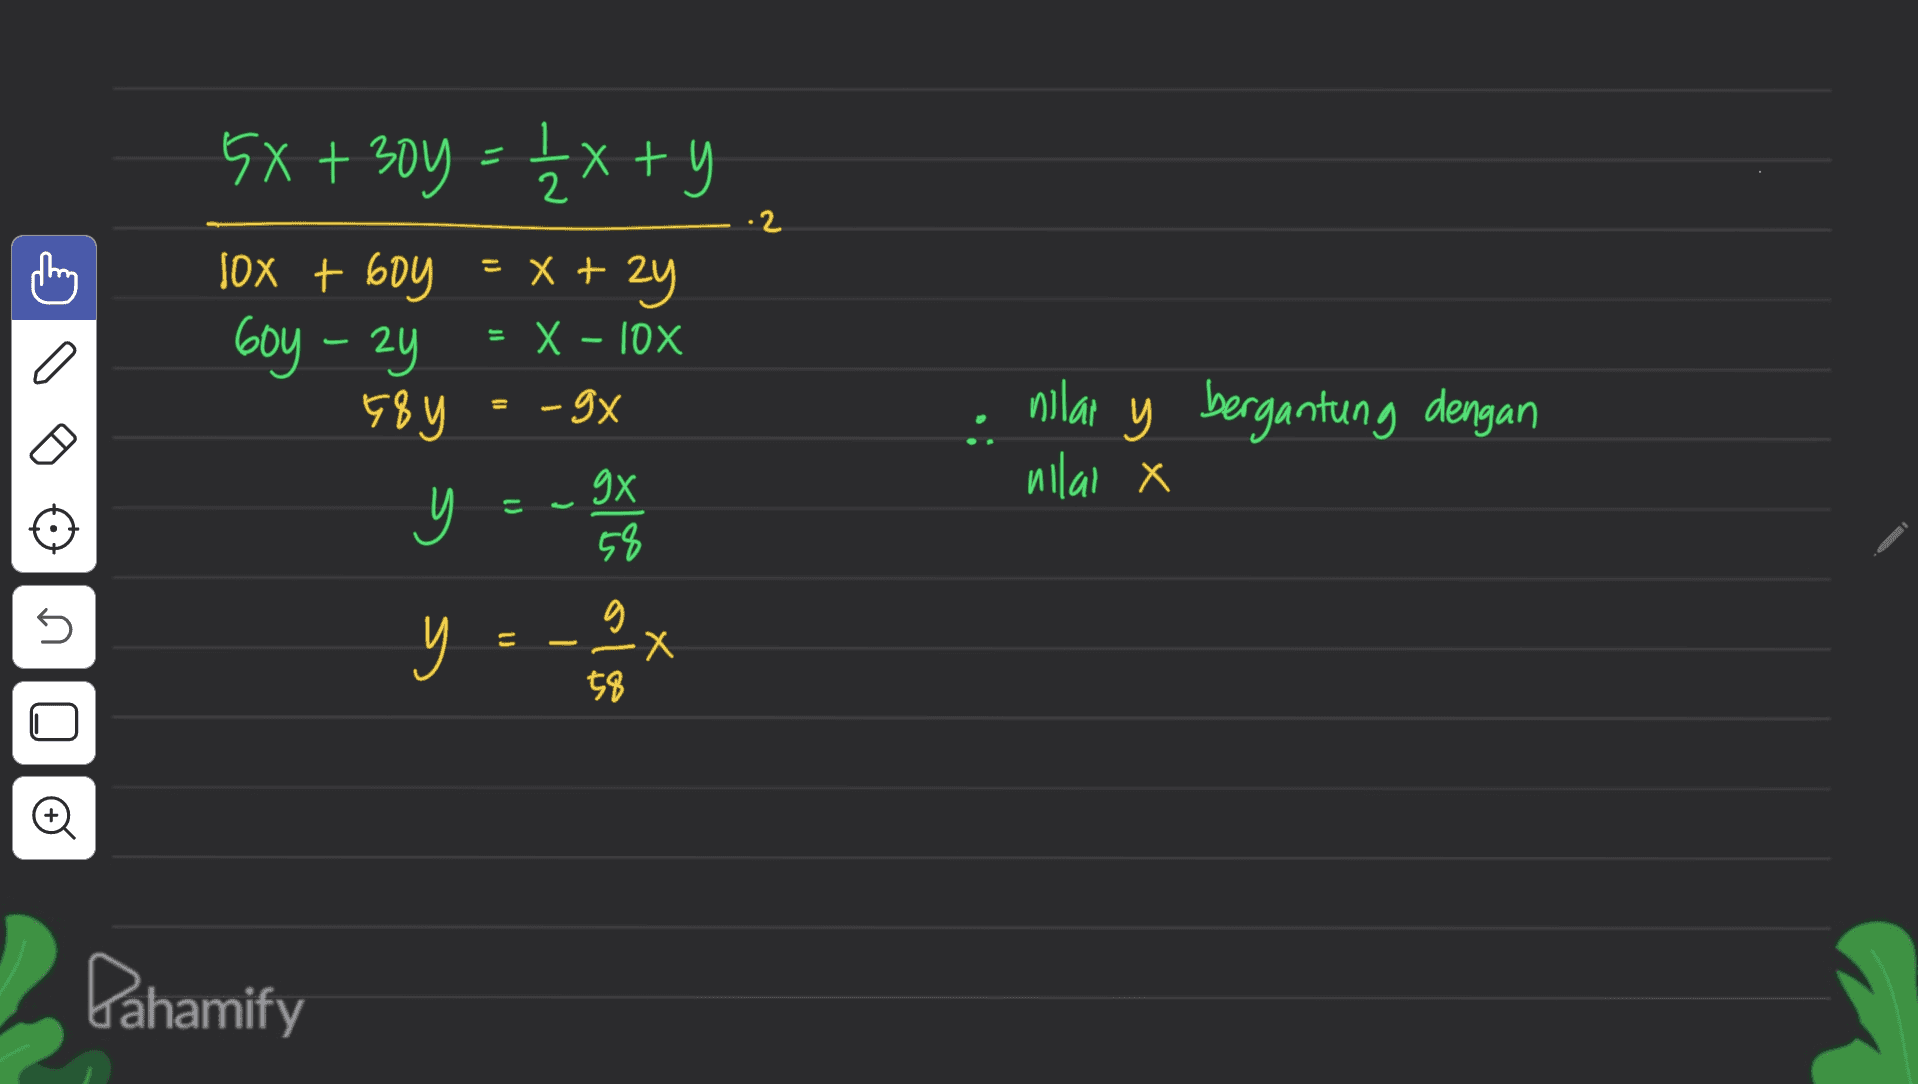 5x + 30y = 1/ 4x + y 2 hz - hog sox + 60y = x + x + 2y = x - 10x X E8Y -9x gX y 58 = nilar y bergantung dengan nilal X = y s g E y - Х 58 Pahamify 